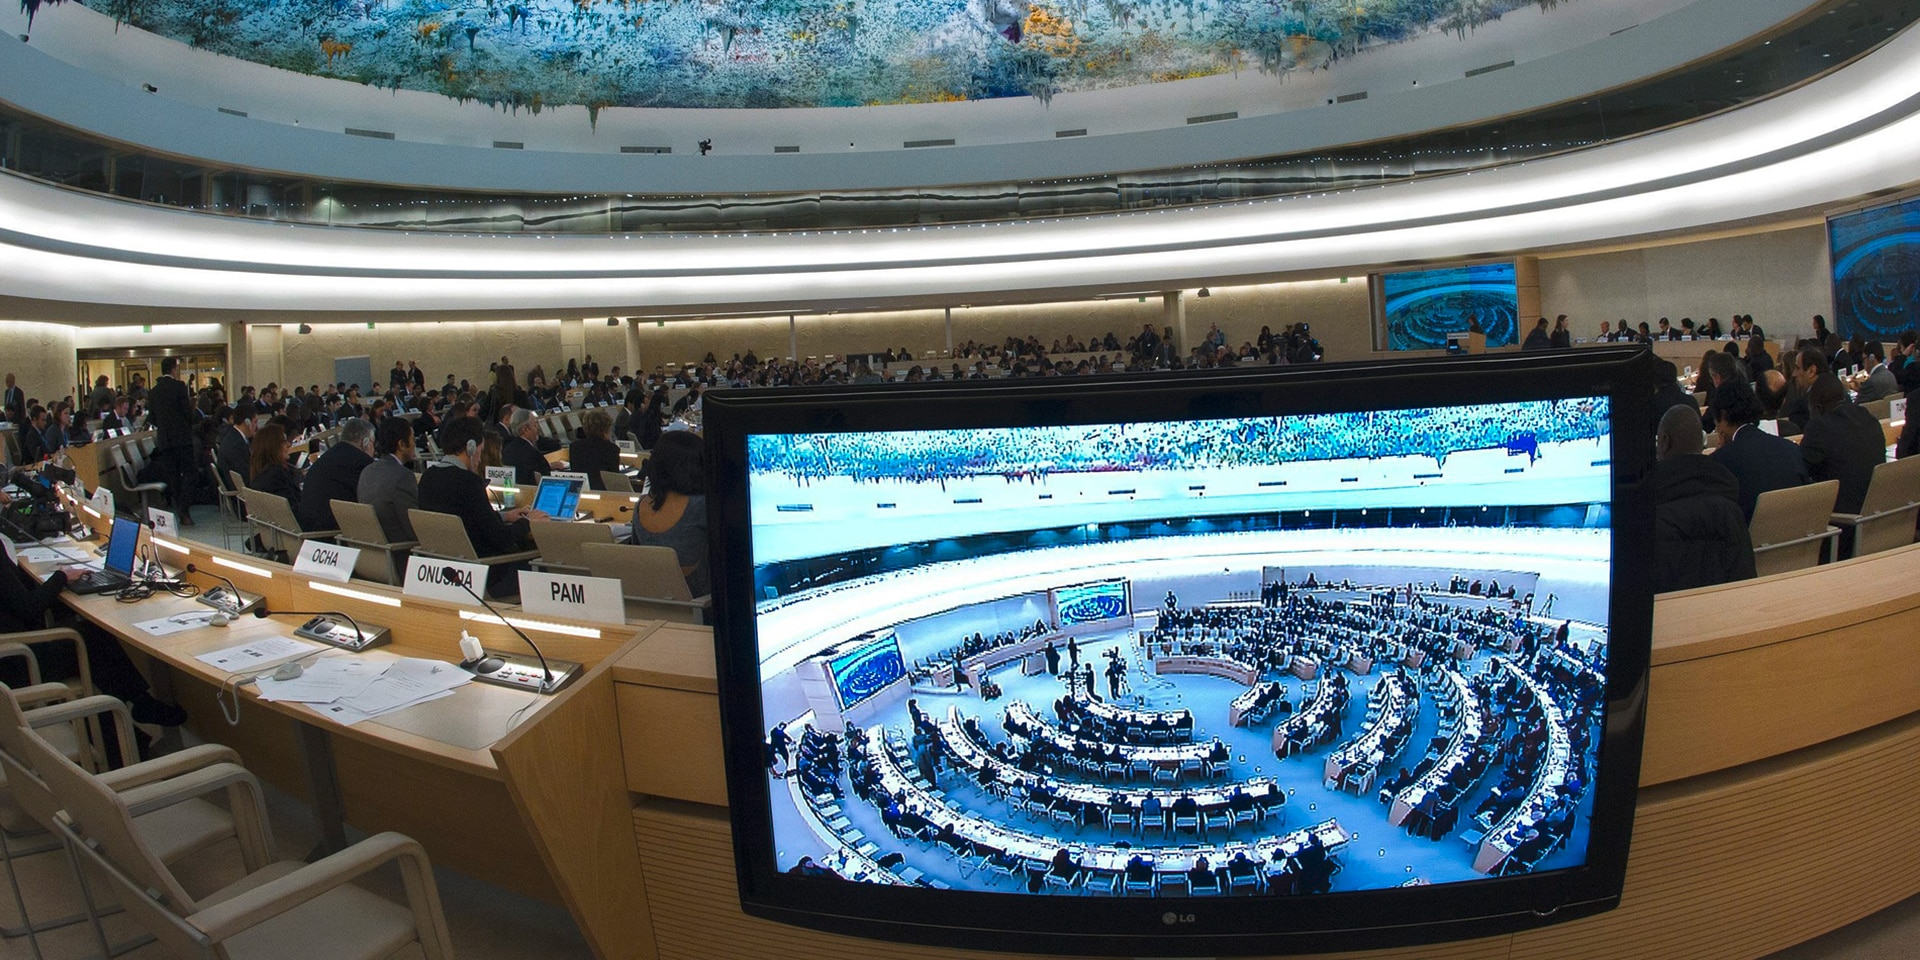 La sala del Consiglio per i diritti umani delle Nazioni Unite a Ginevra. In primo piano uno schermo con le riprese della sala.